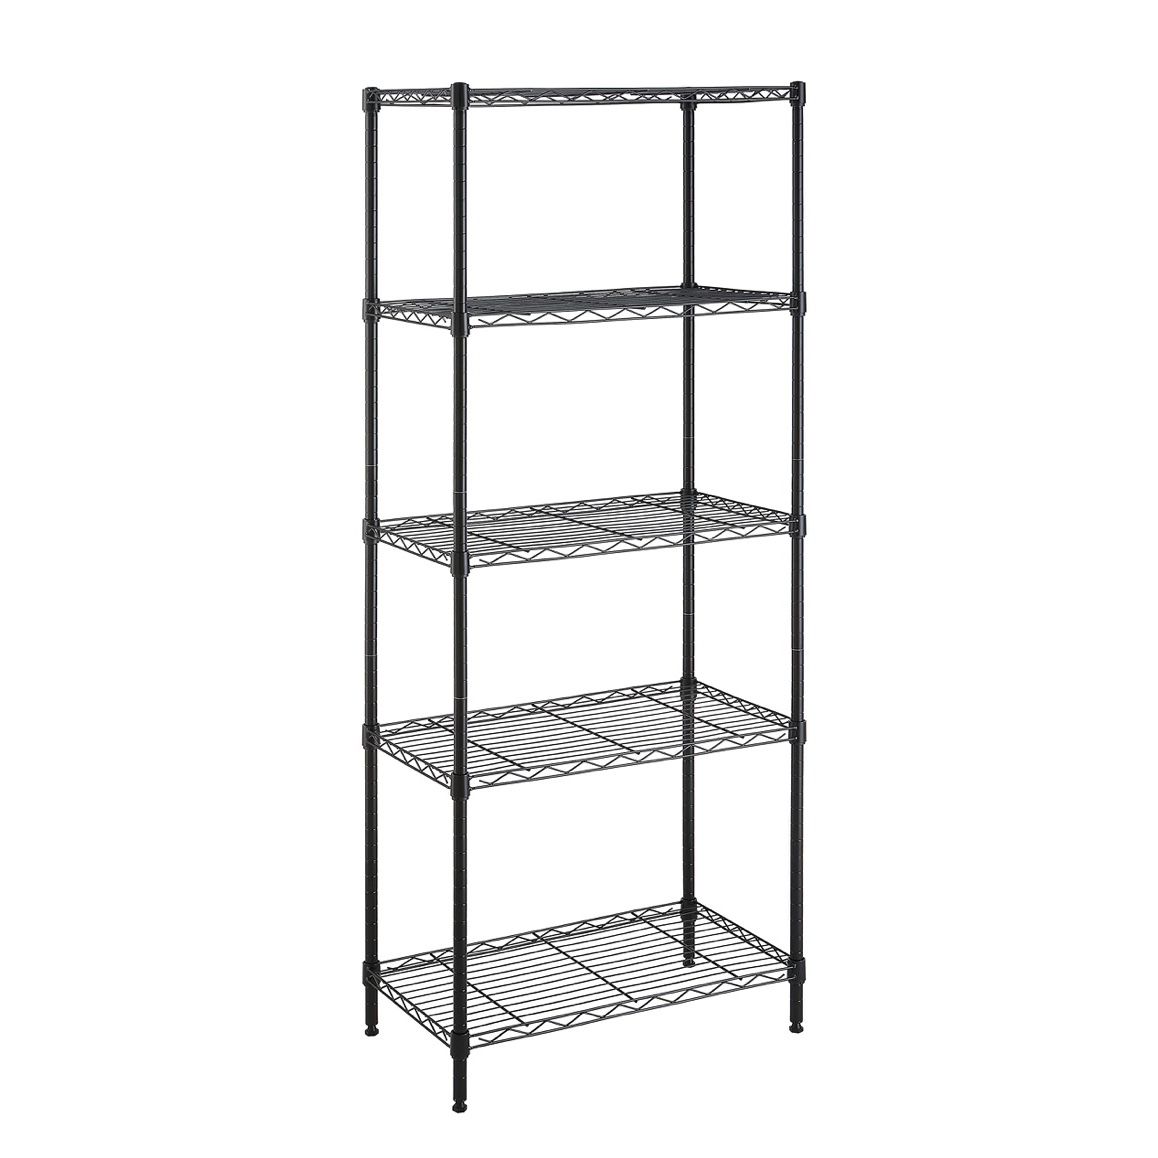 *Brand new* 5-shelf Adjustable Storage Steel Shelf